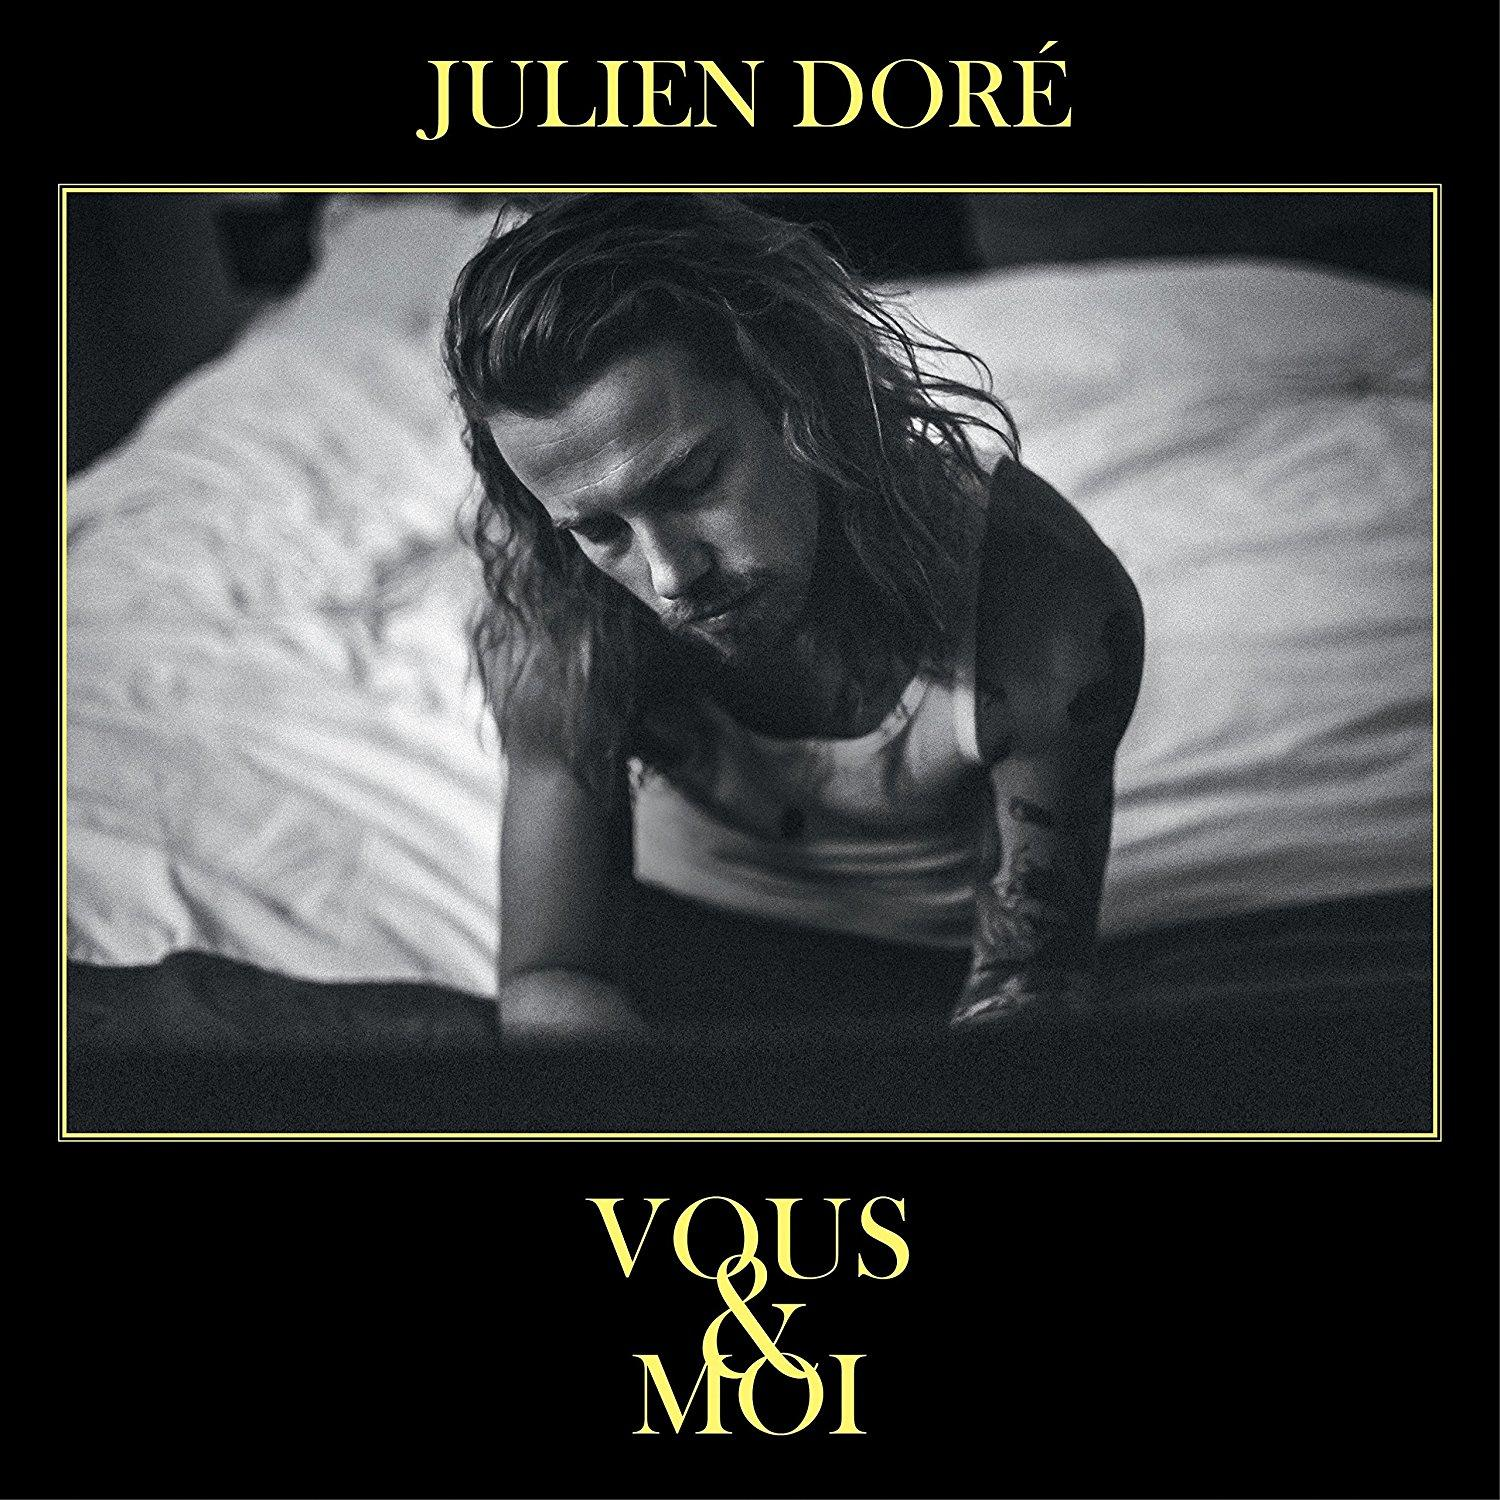 (CD) & Dore - Julien Moi Vous -